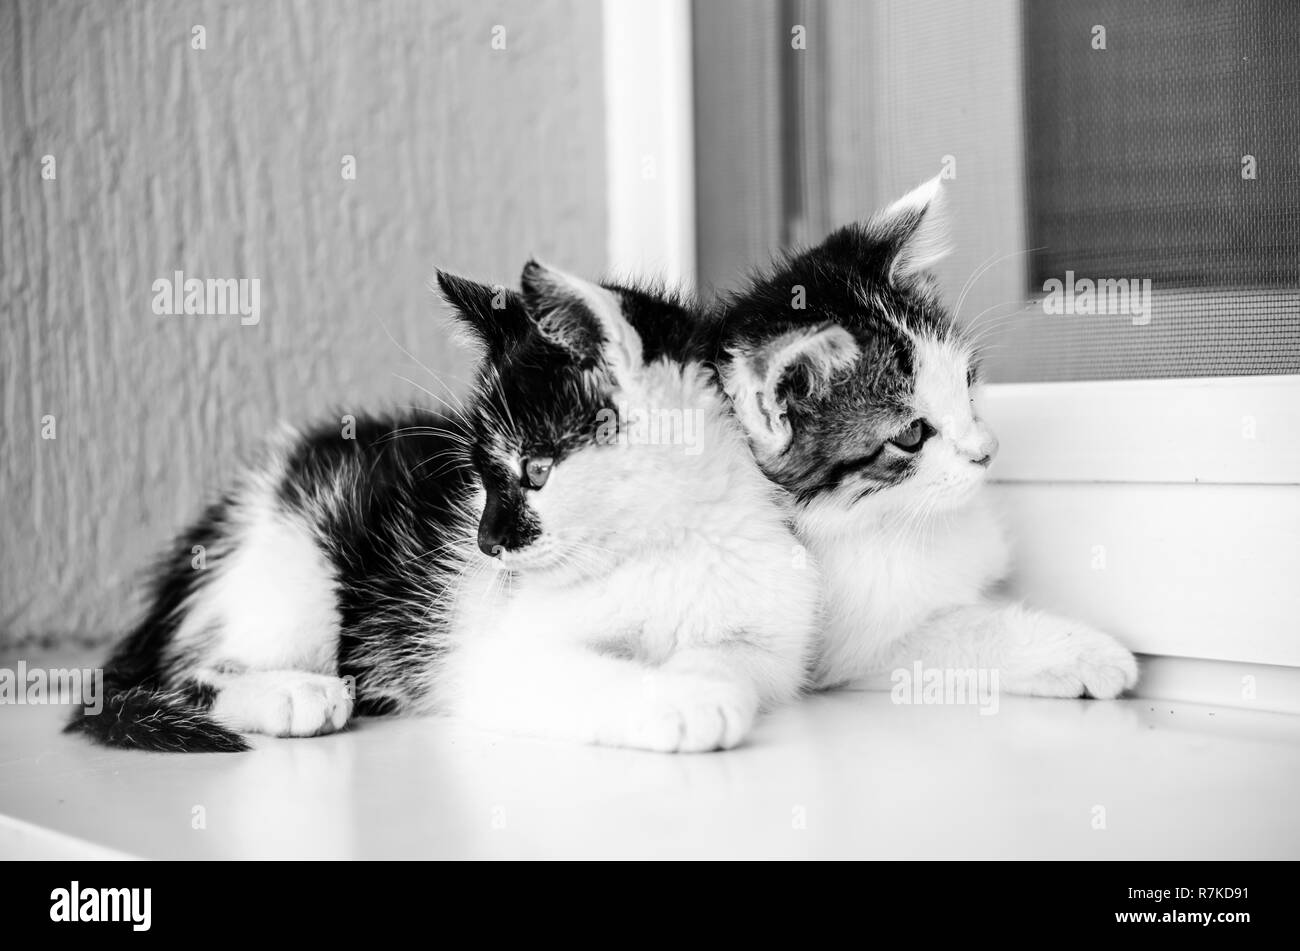 Deux adorables petit chat noir et blanc animaux jouant sur la fenêtre Banque D'Images